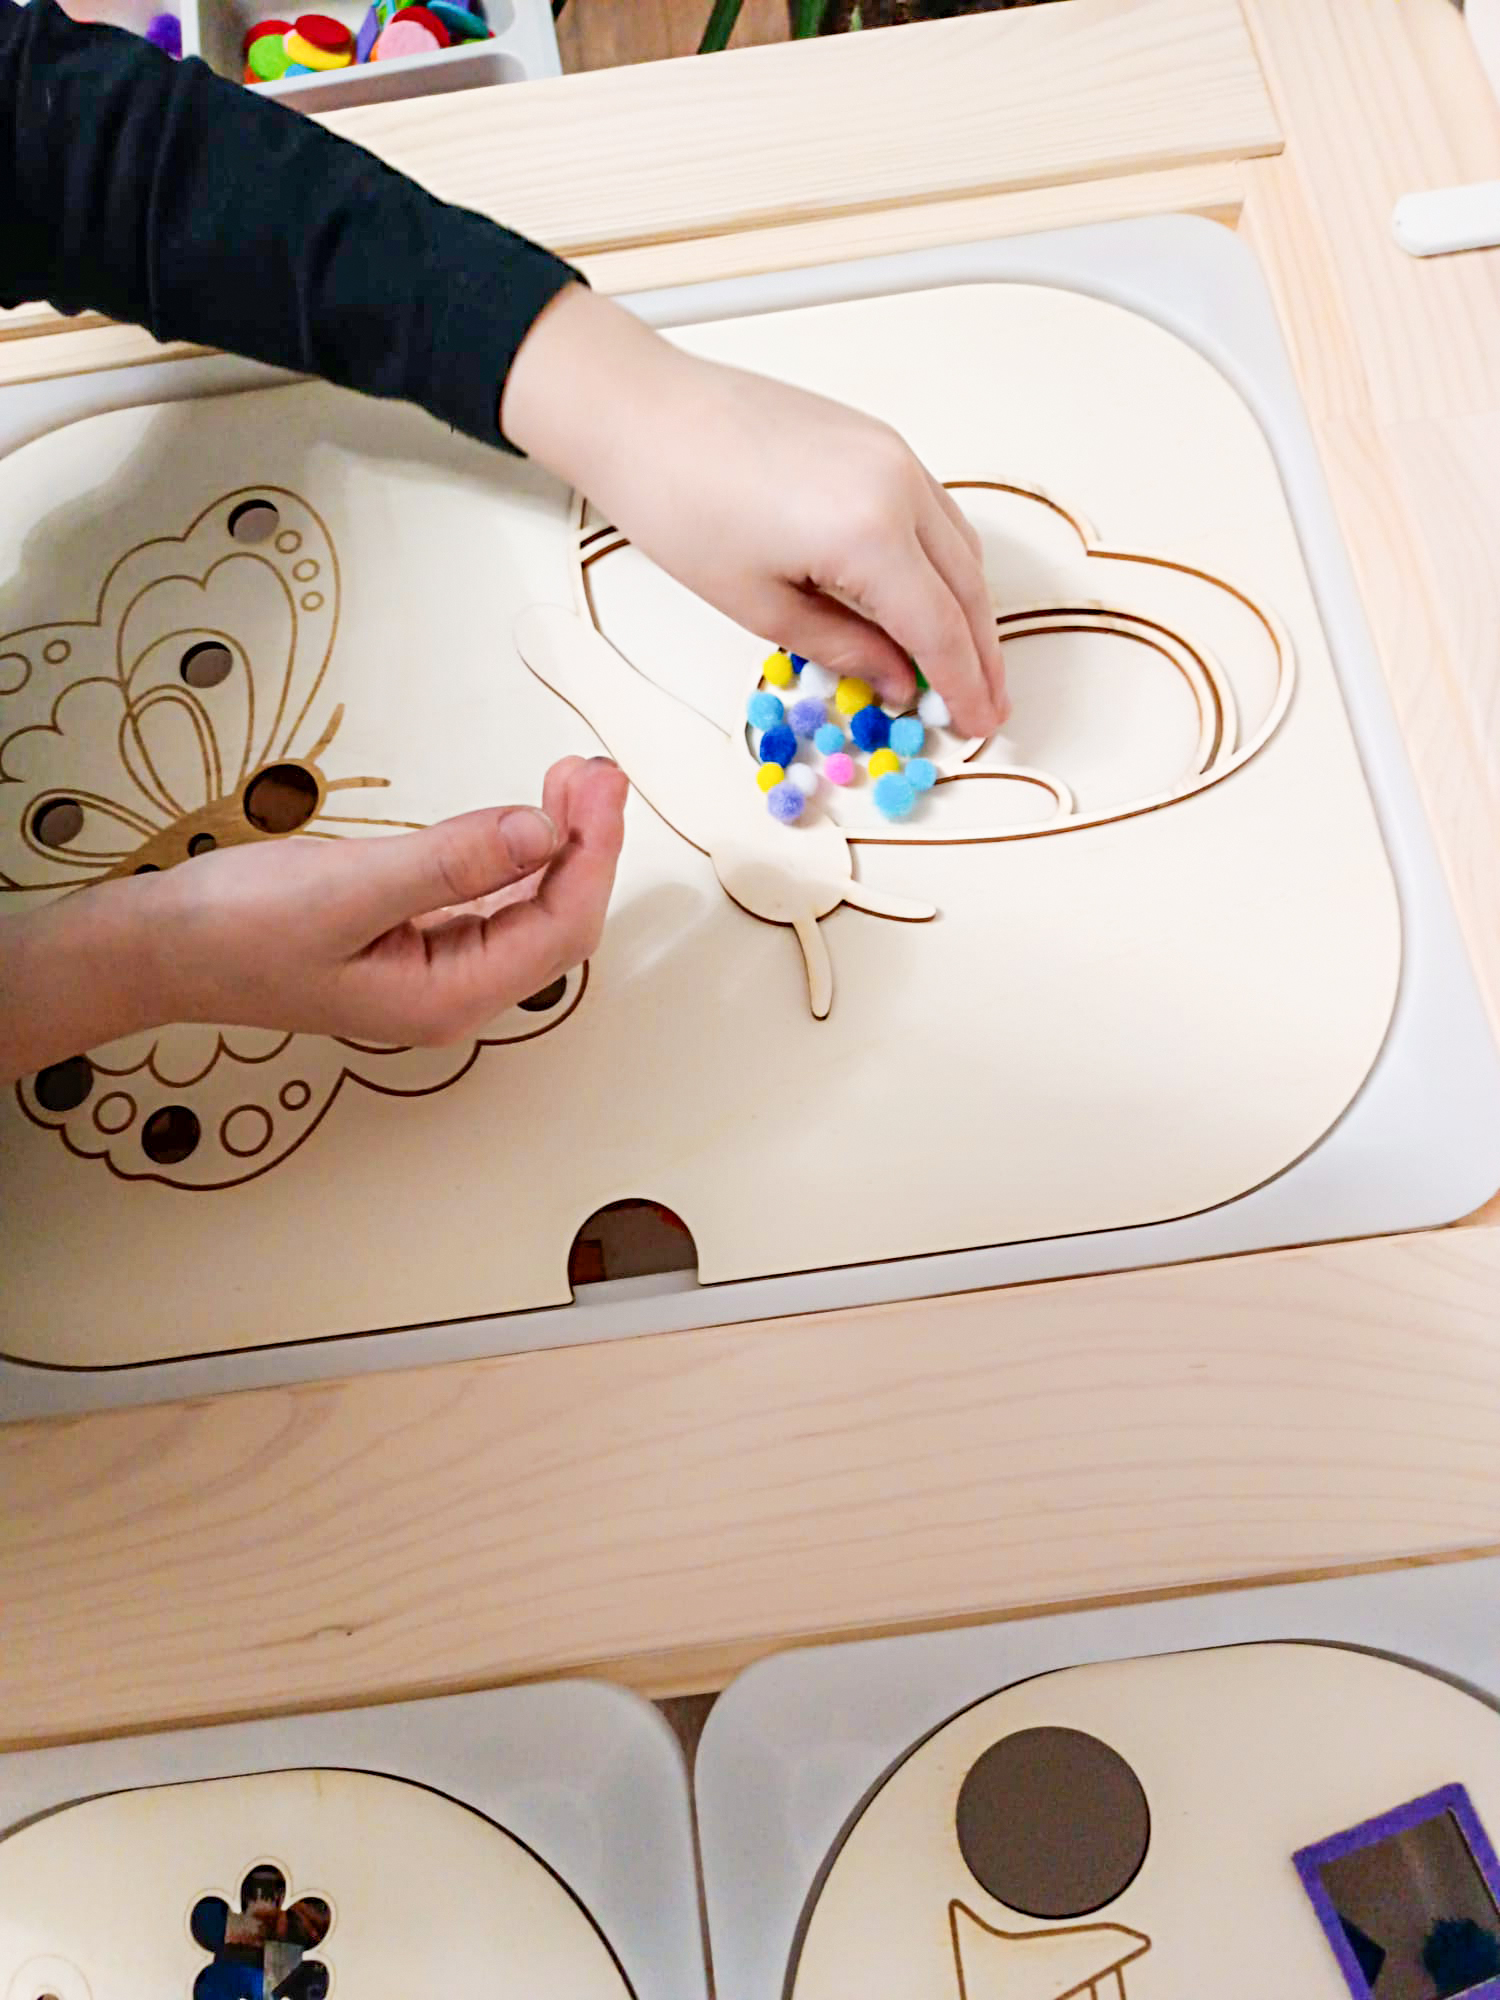 Spielplatte "Kreise" | Klein oder Groß | Sortier- und Spielplatte für Kinder